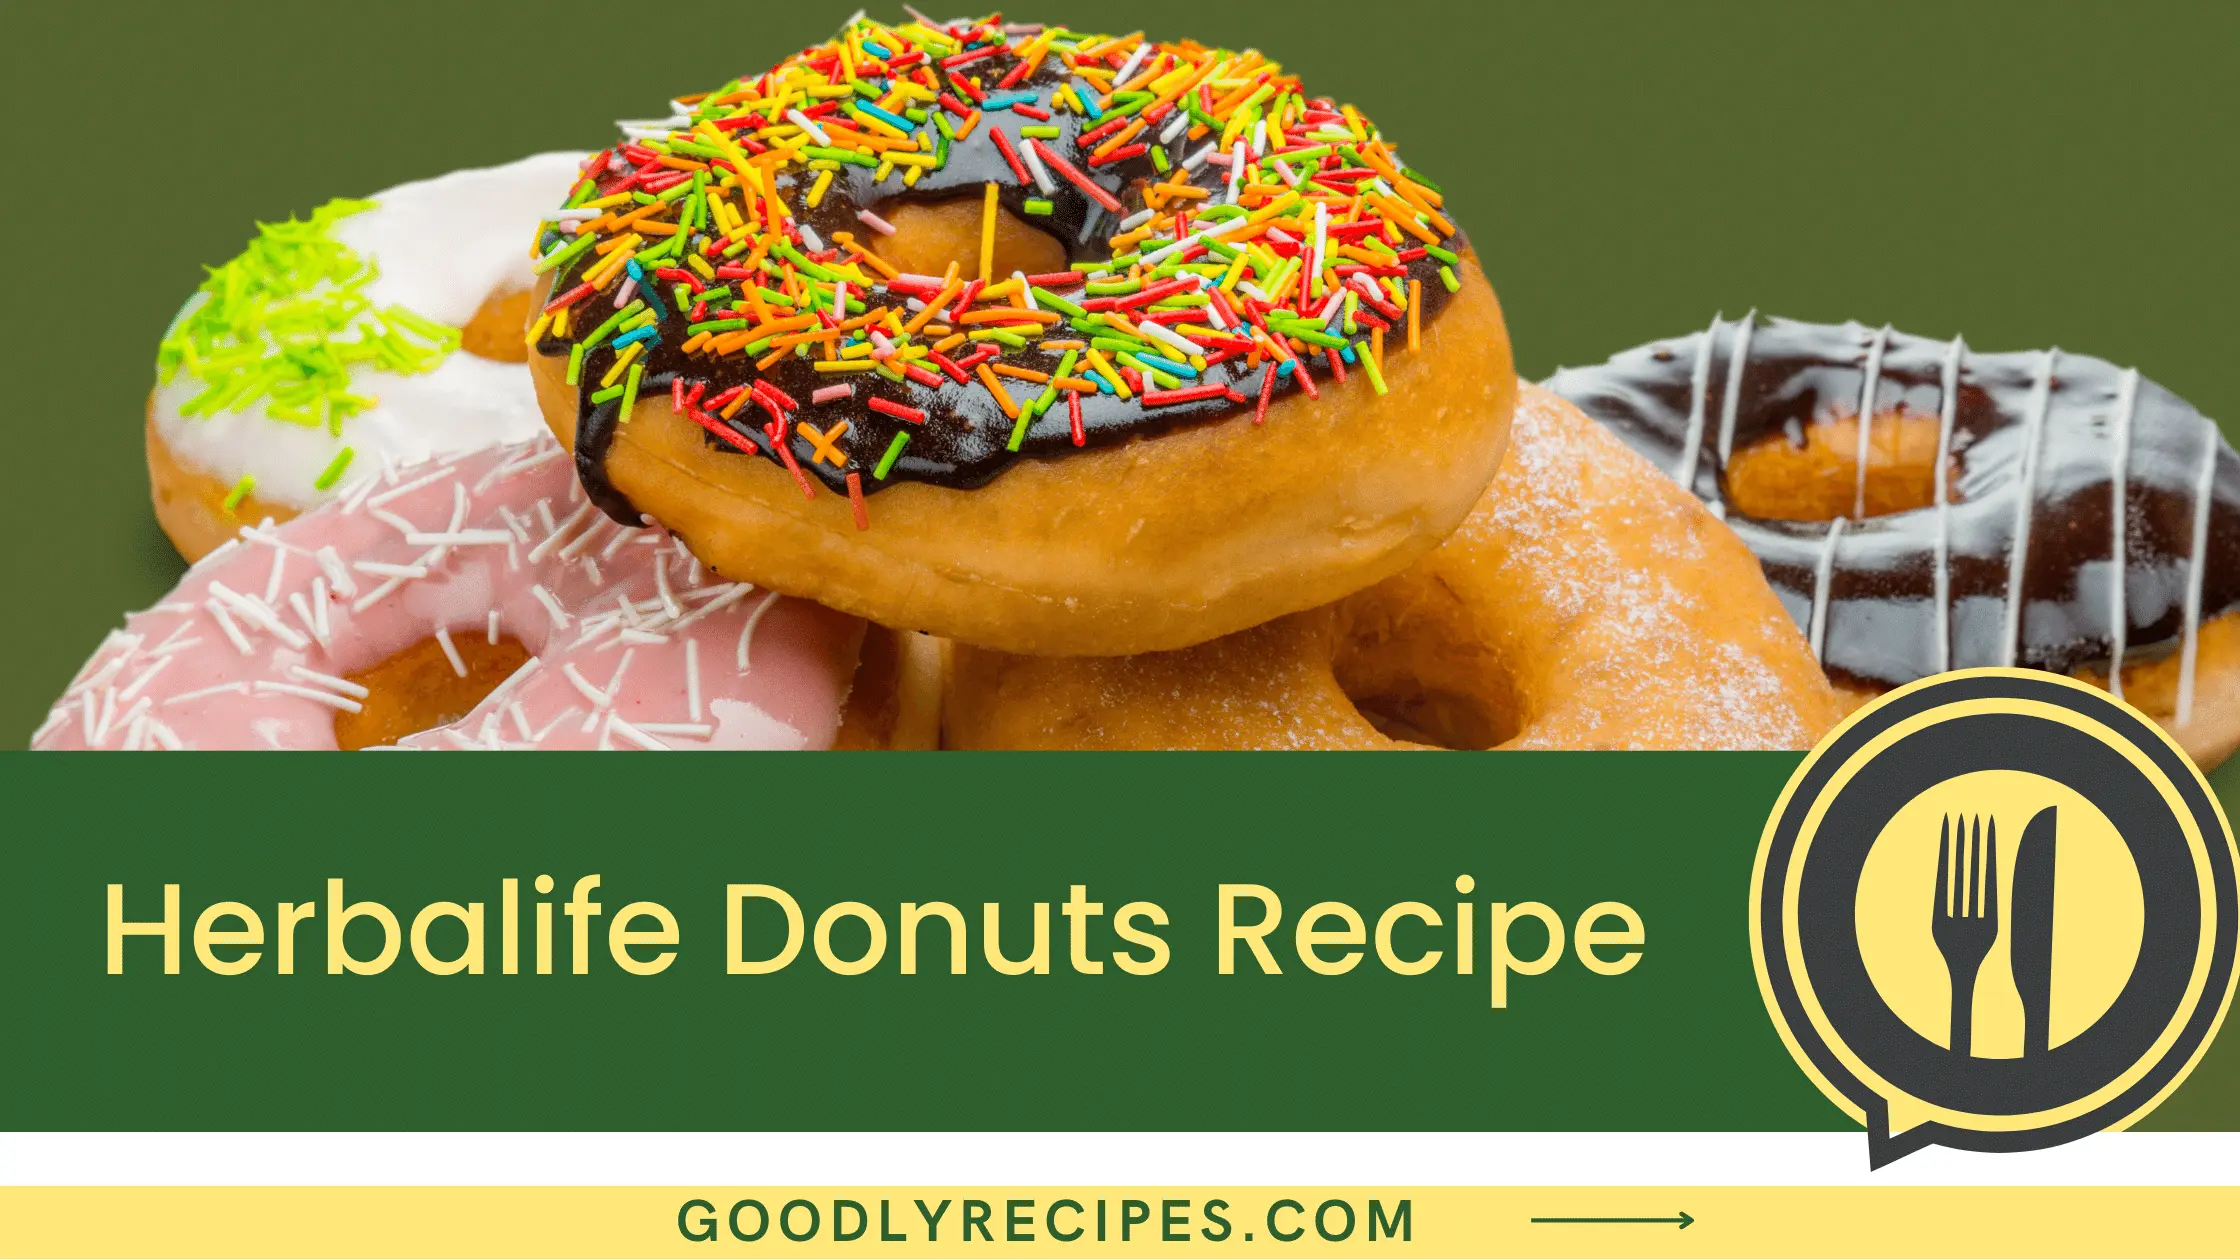 Herbalife Donuts Recipe